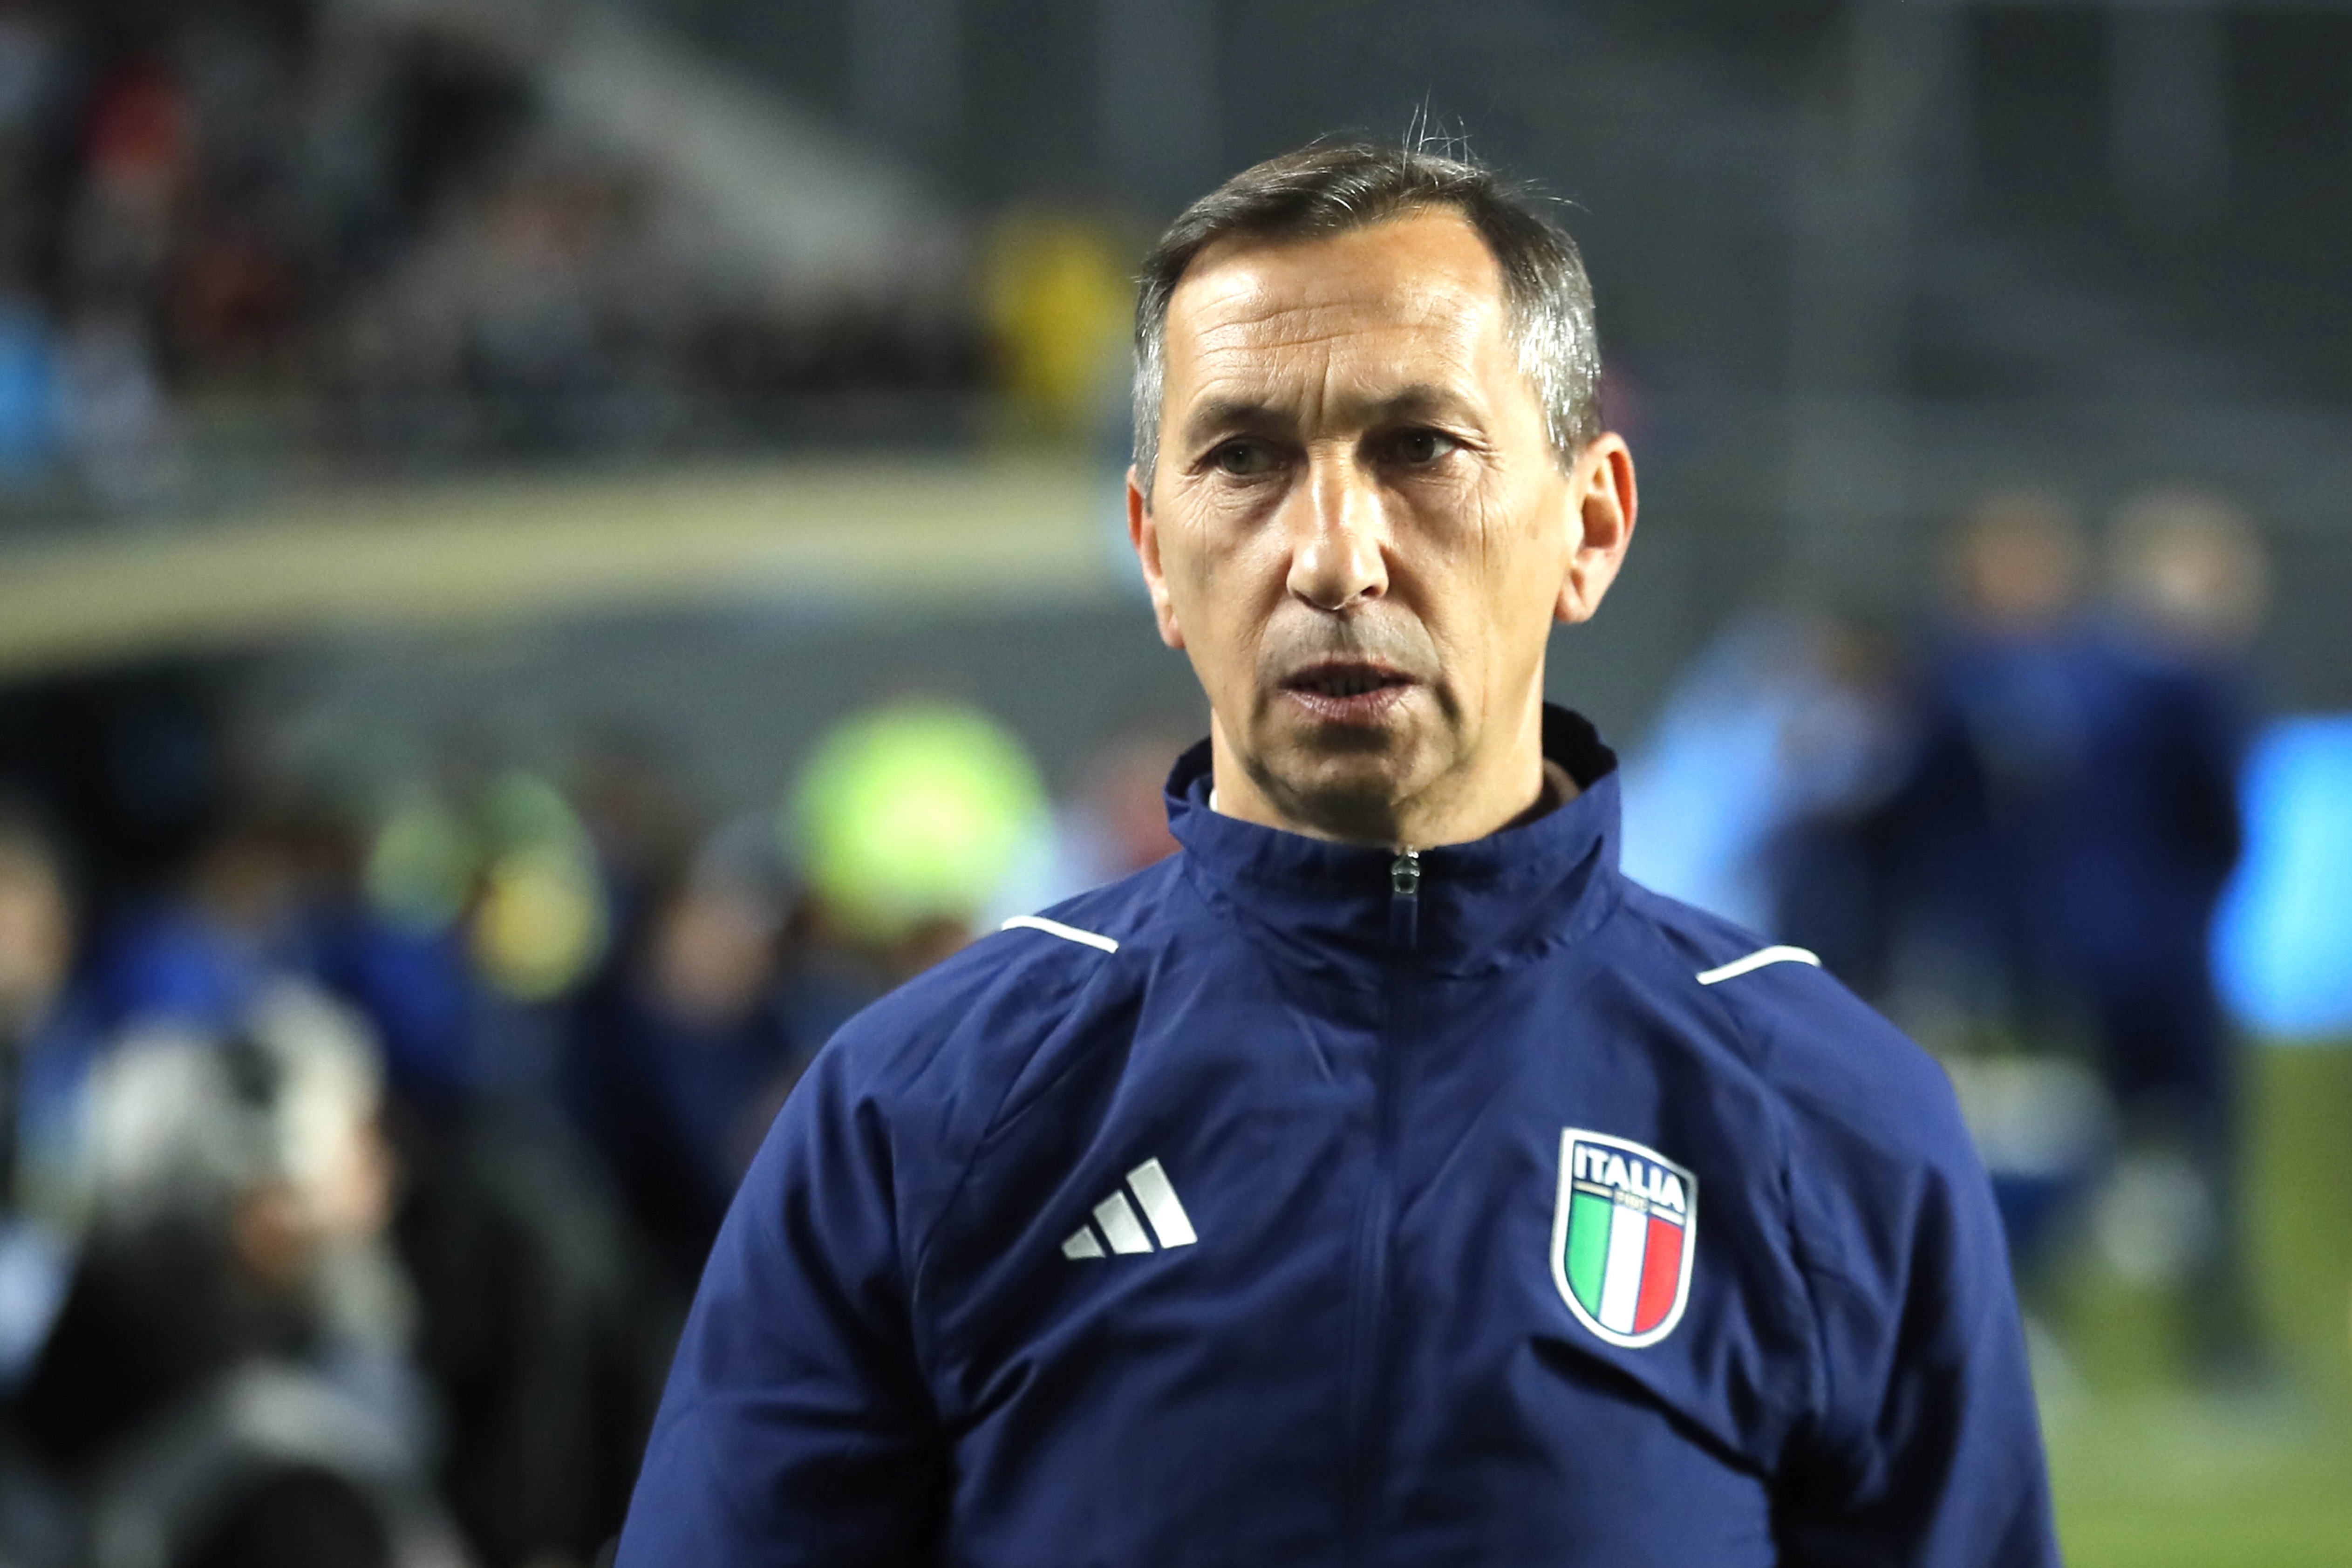 Previo a la final del mundial Sub-20, el entrenador italiano